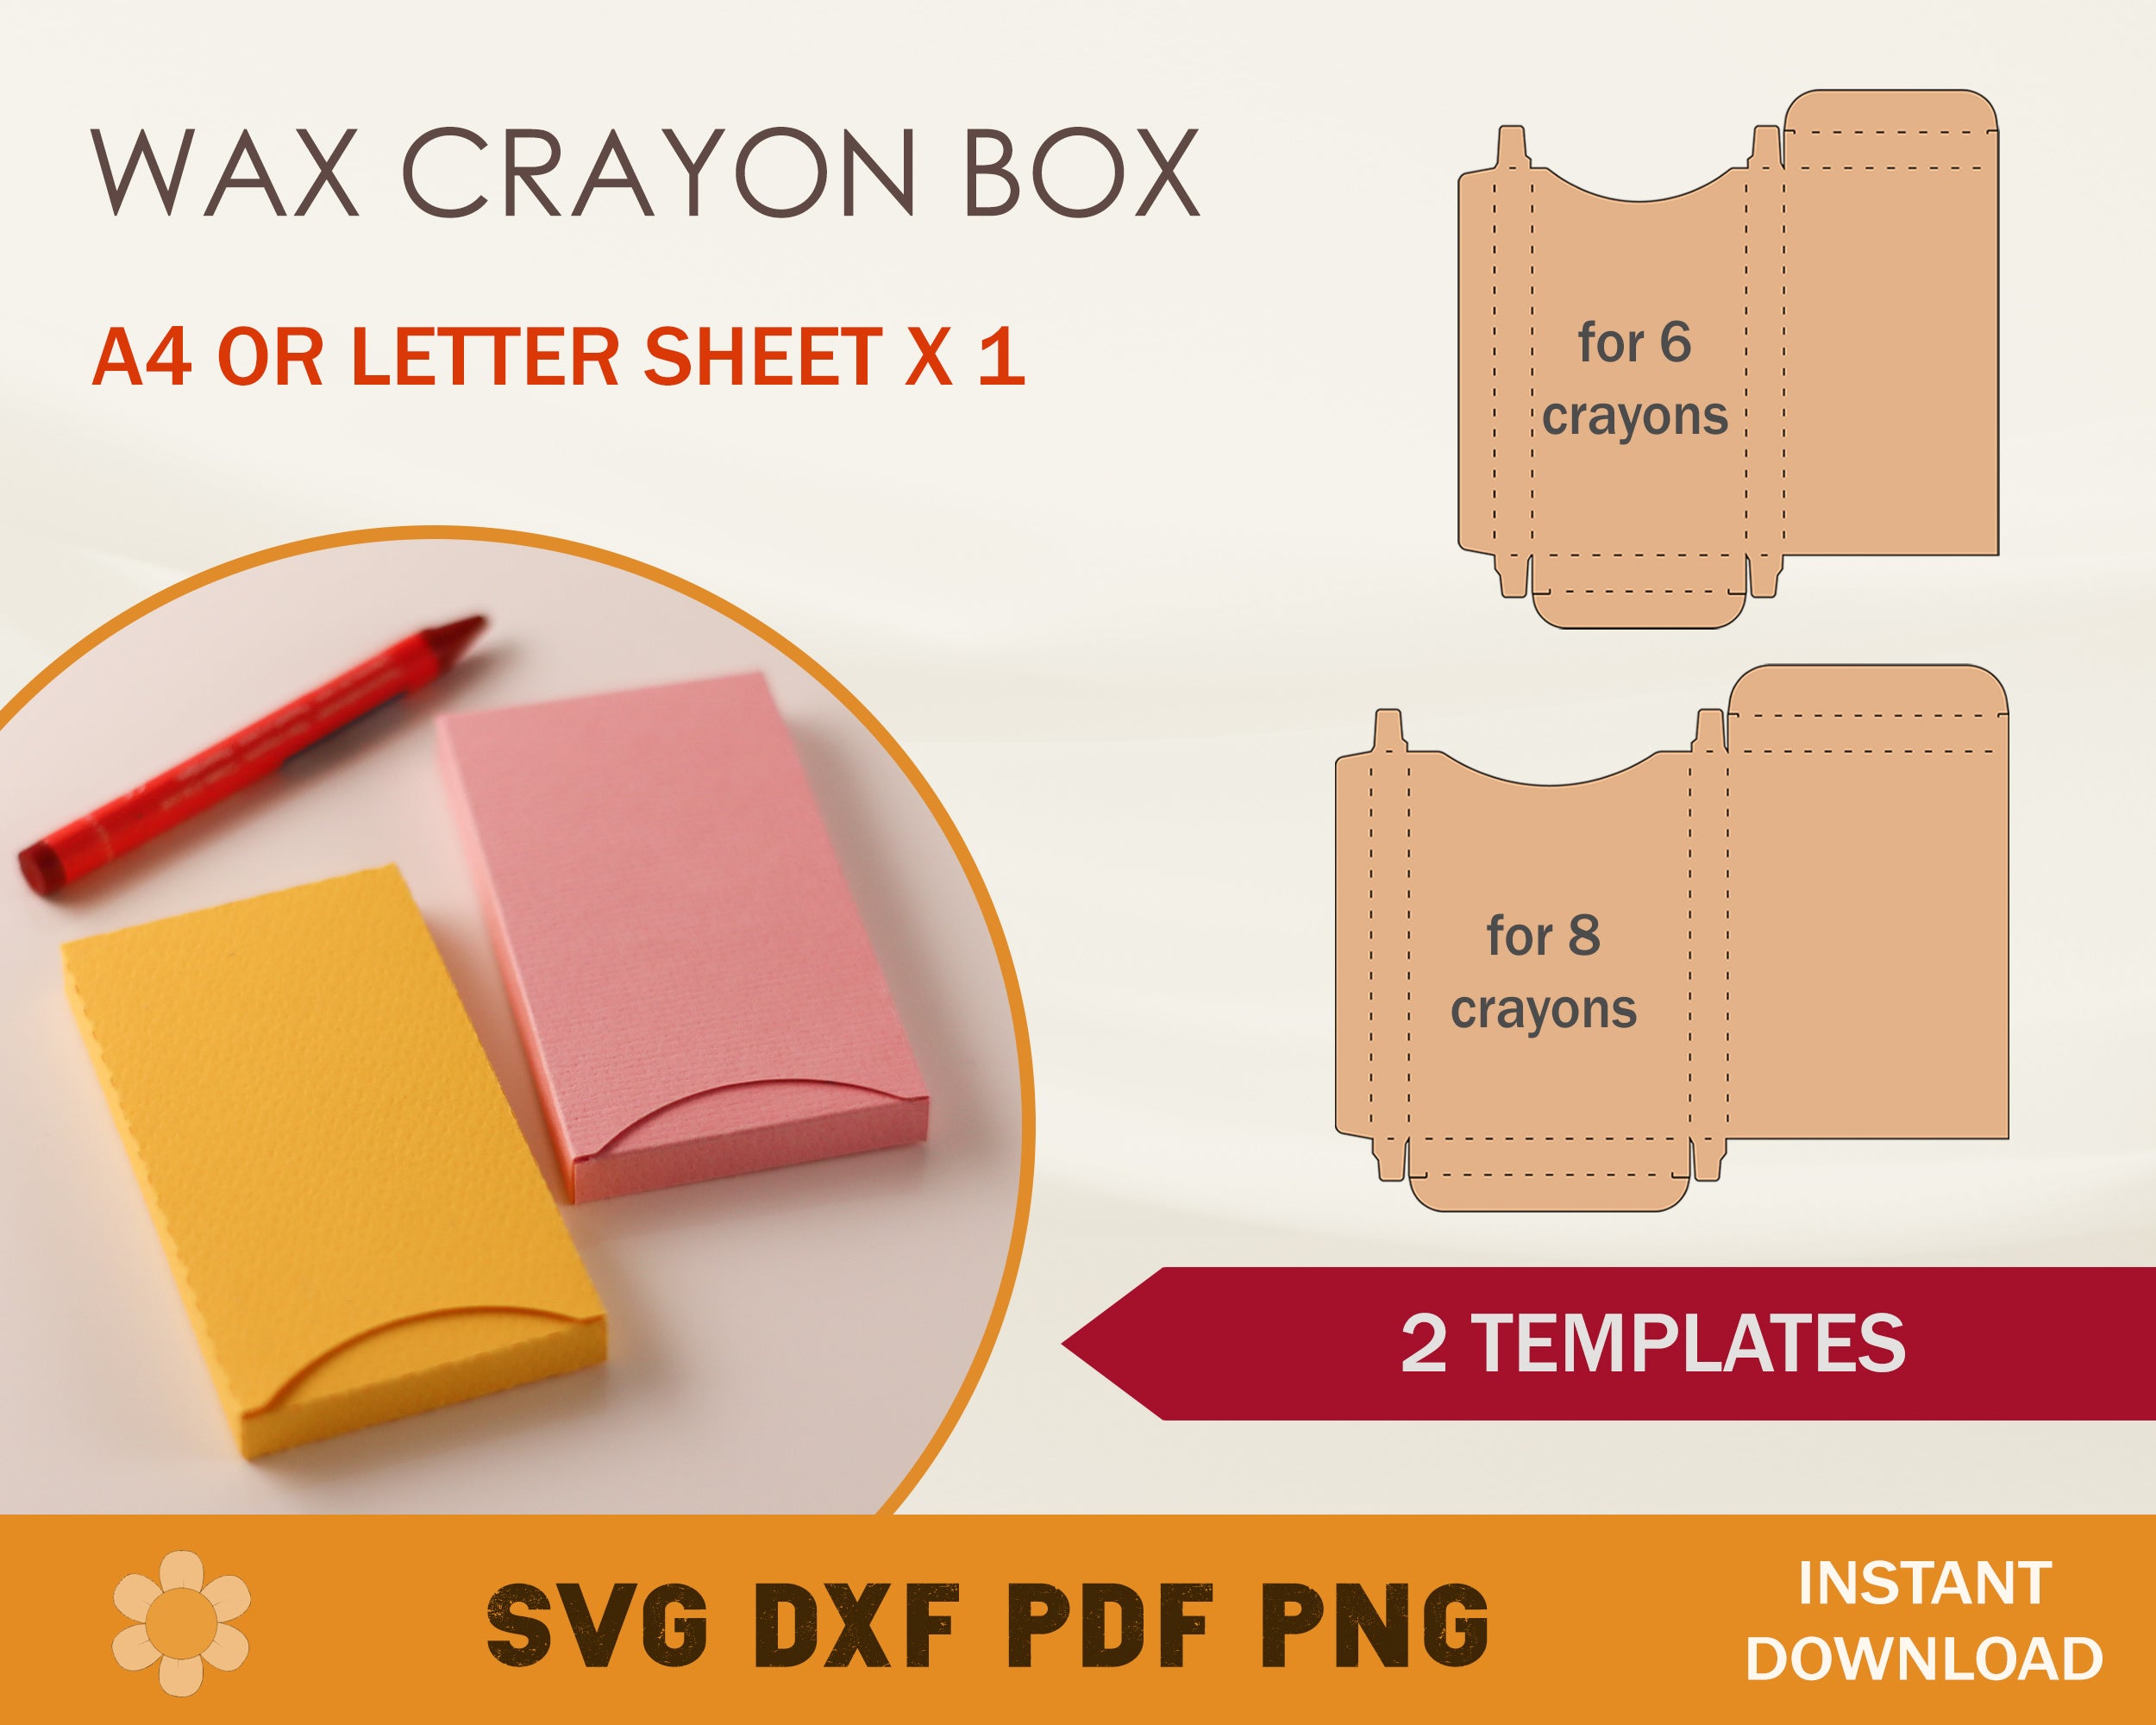 Crayon Boxes